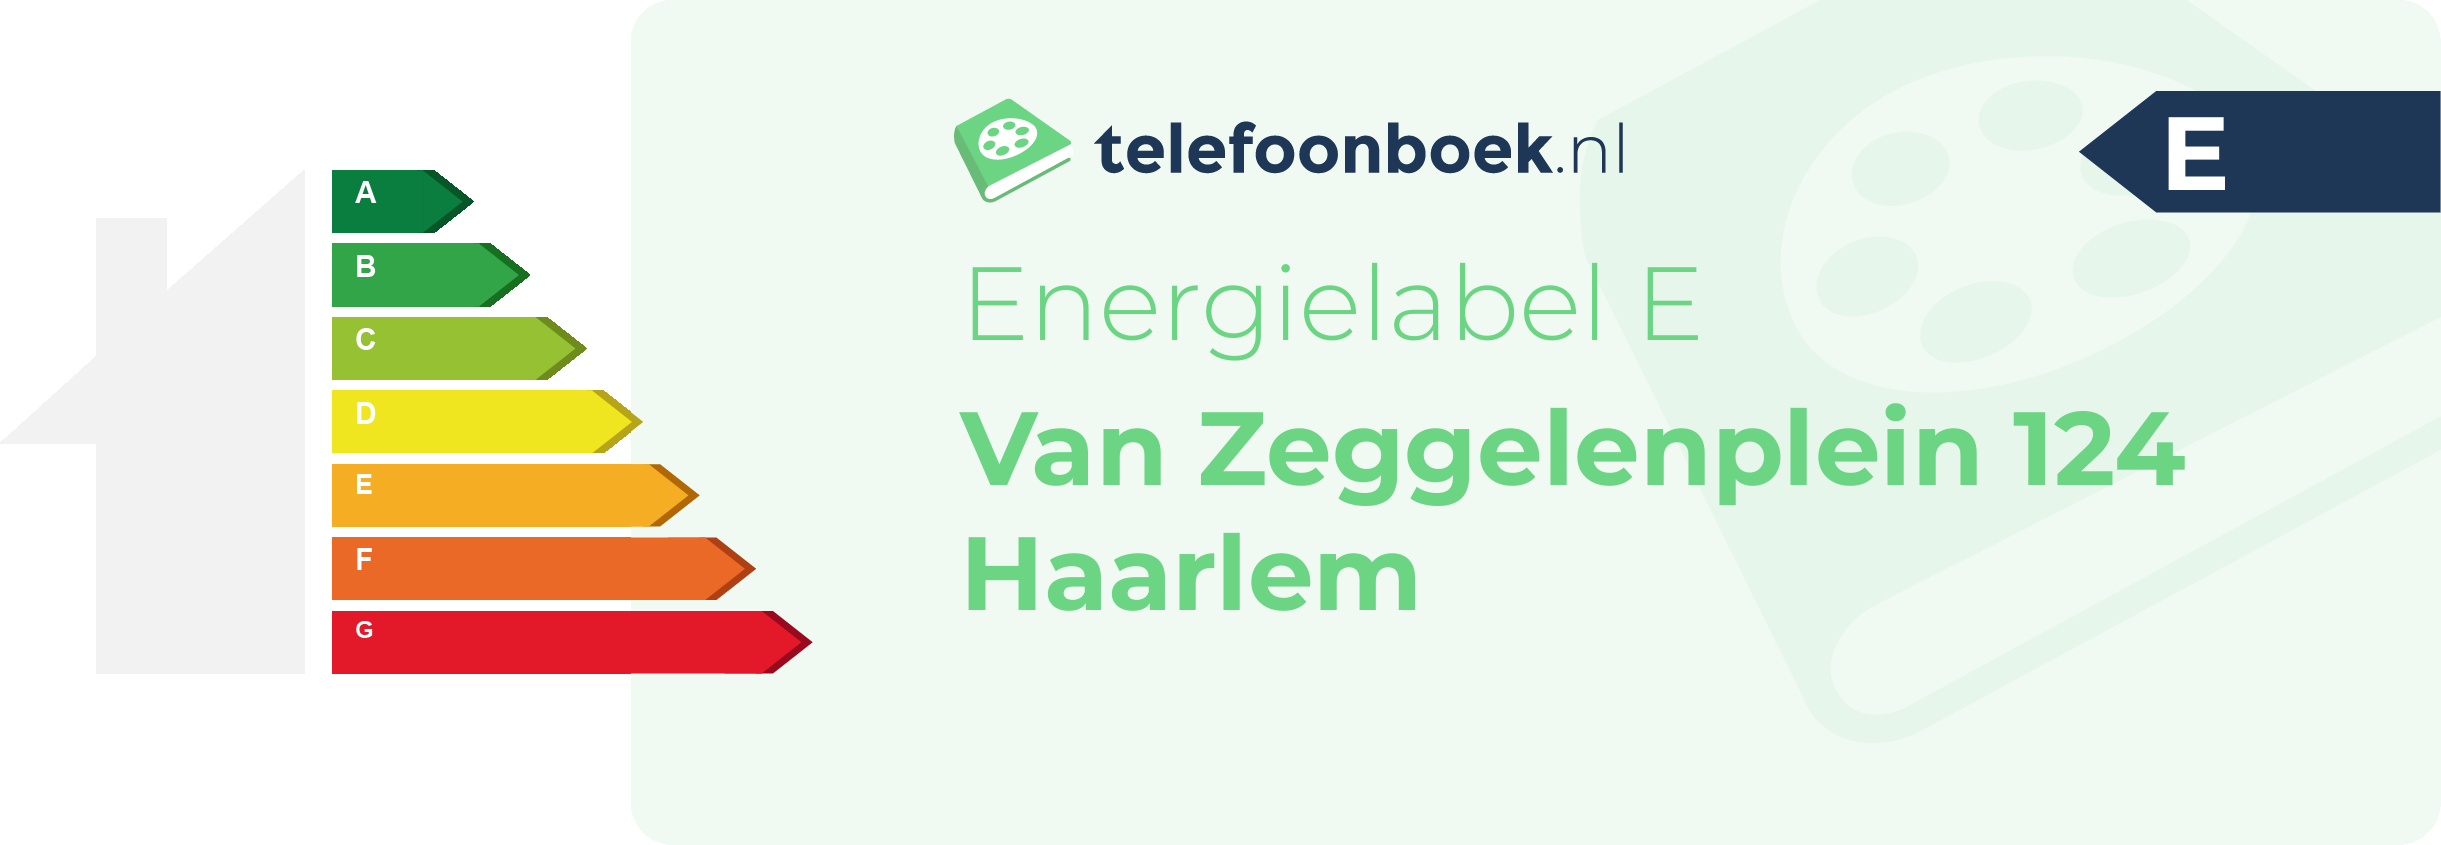 Energielabel Van Zeggelenplein 124 Haarlem